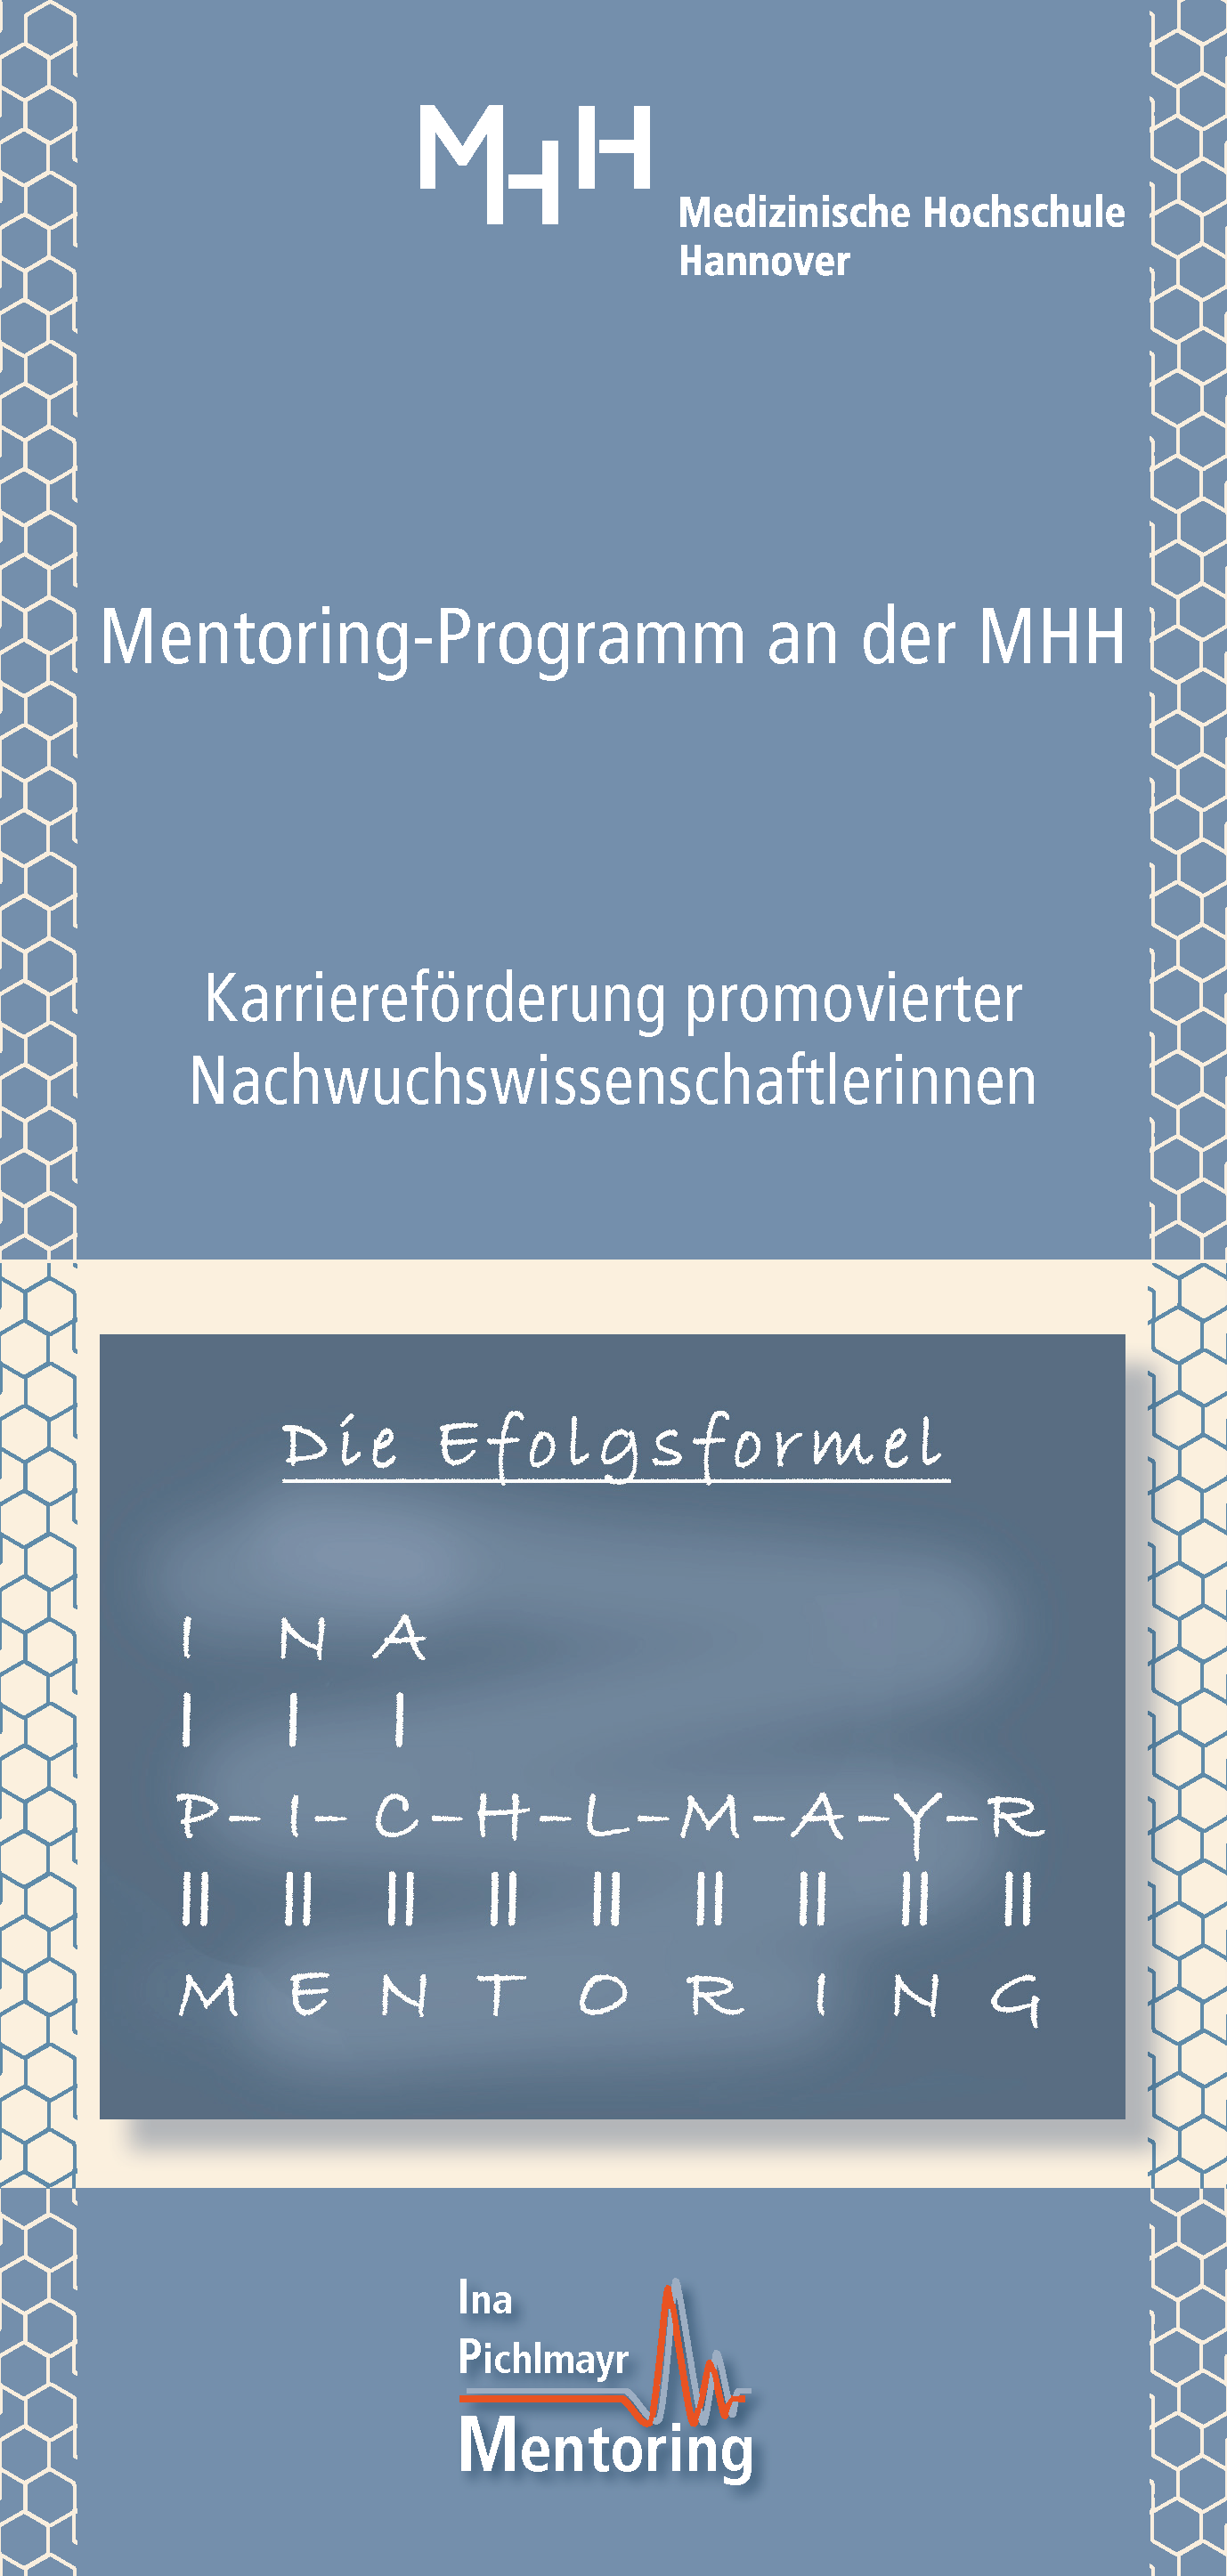 Auf dem Bild ist die erste Seite des Informationsflyers zum Ina-Pichlmayr-Mentoring abgebildet.